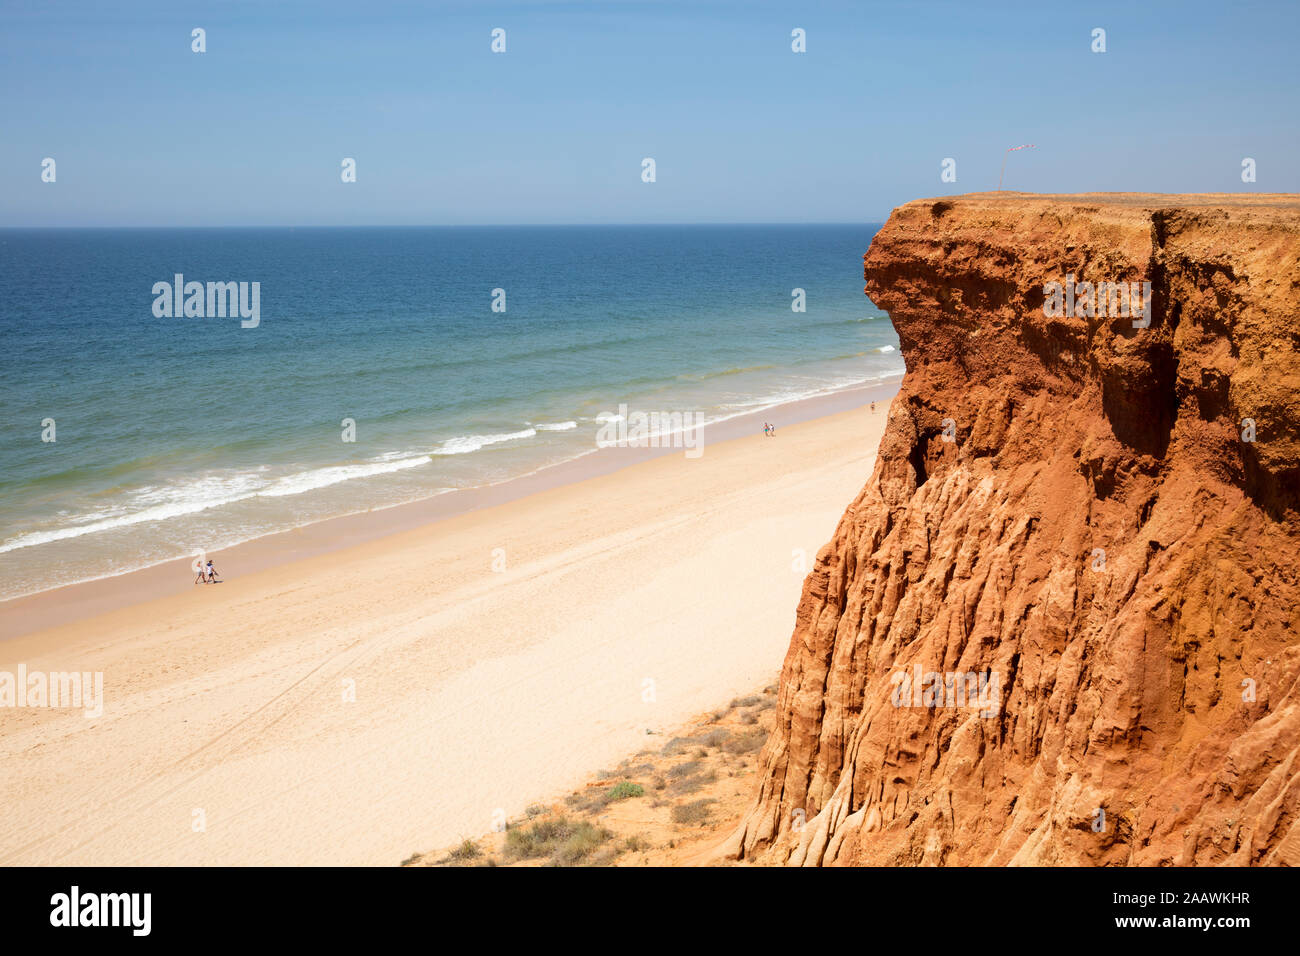 Sandstone at beach in Algarve, Portugal Stock Photo